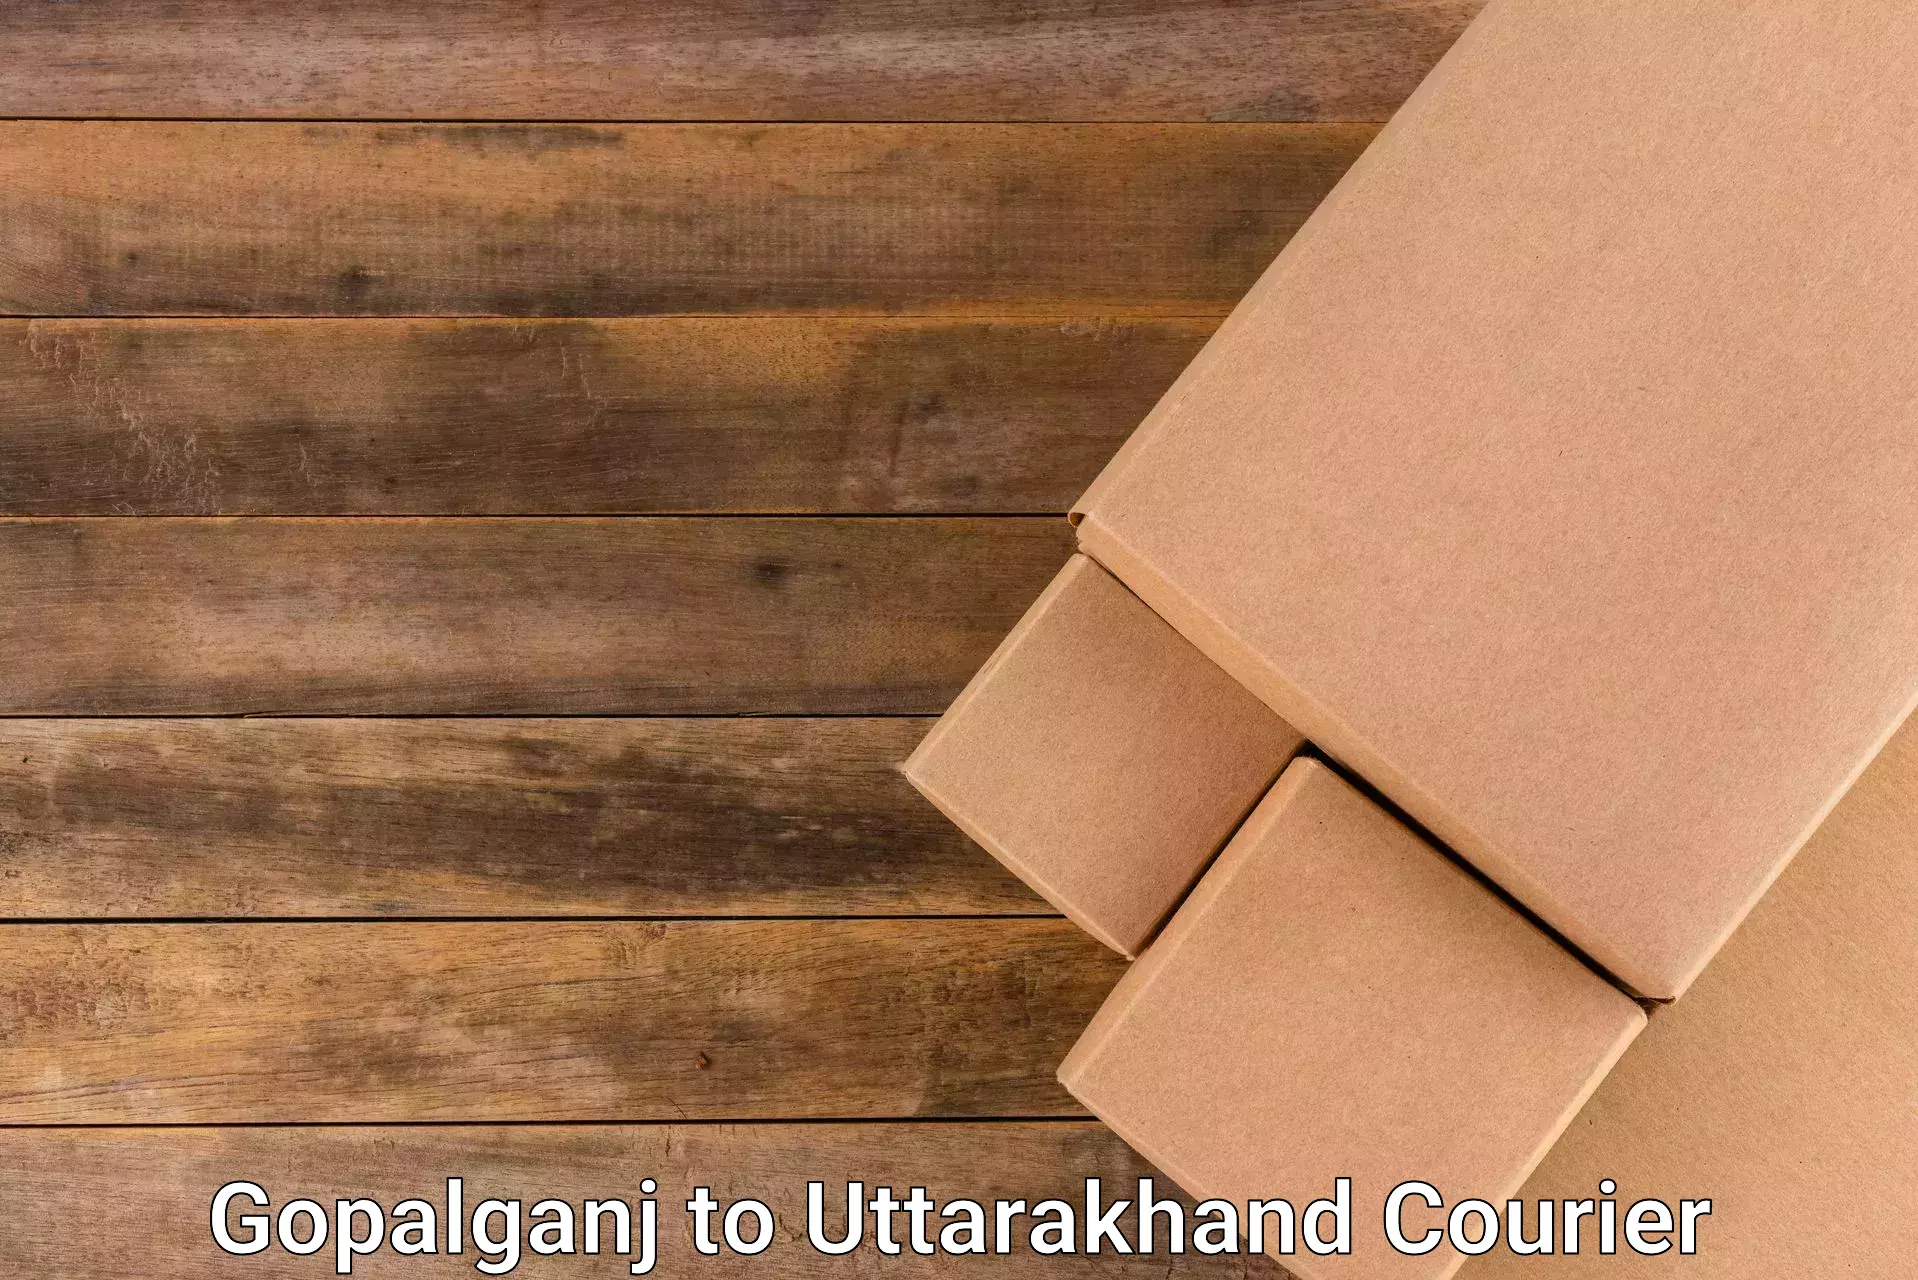 Fast shipping solutions Gopalganj to Dehradun